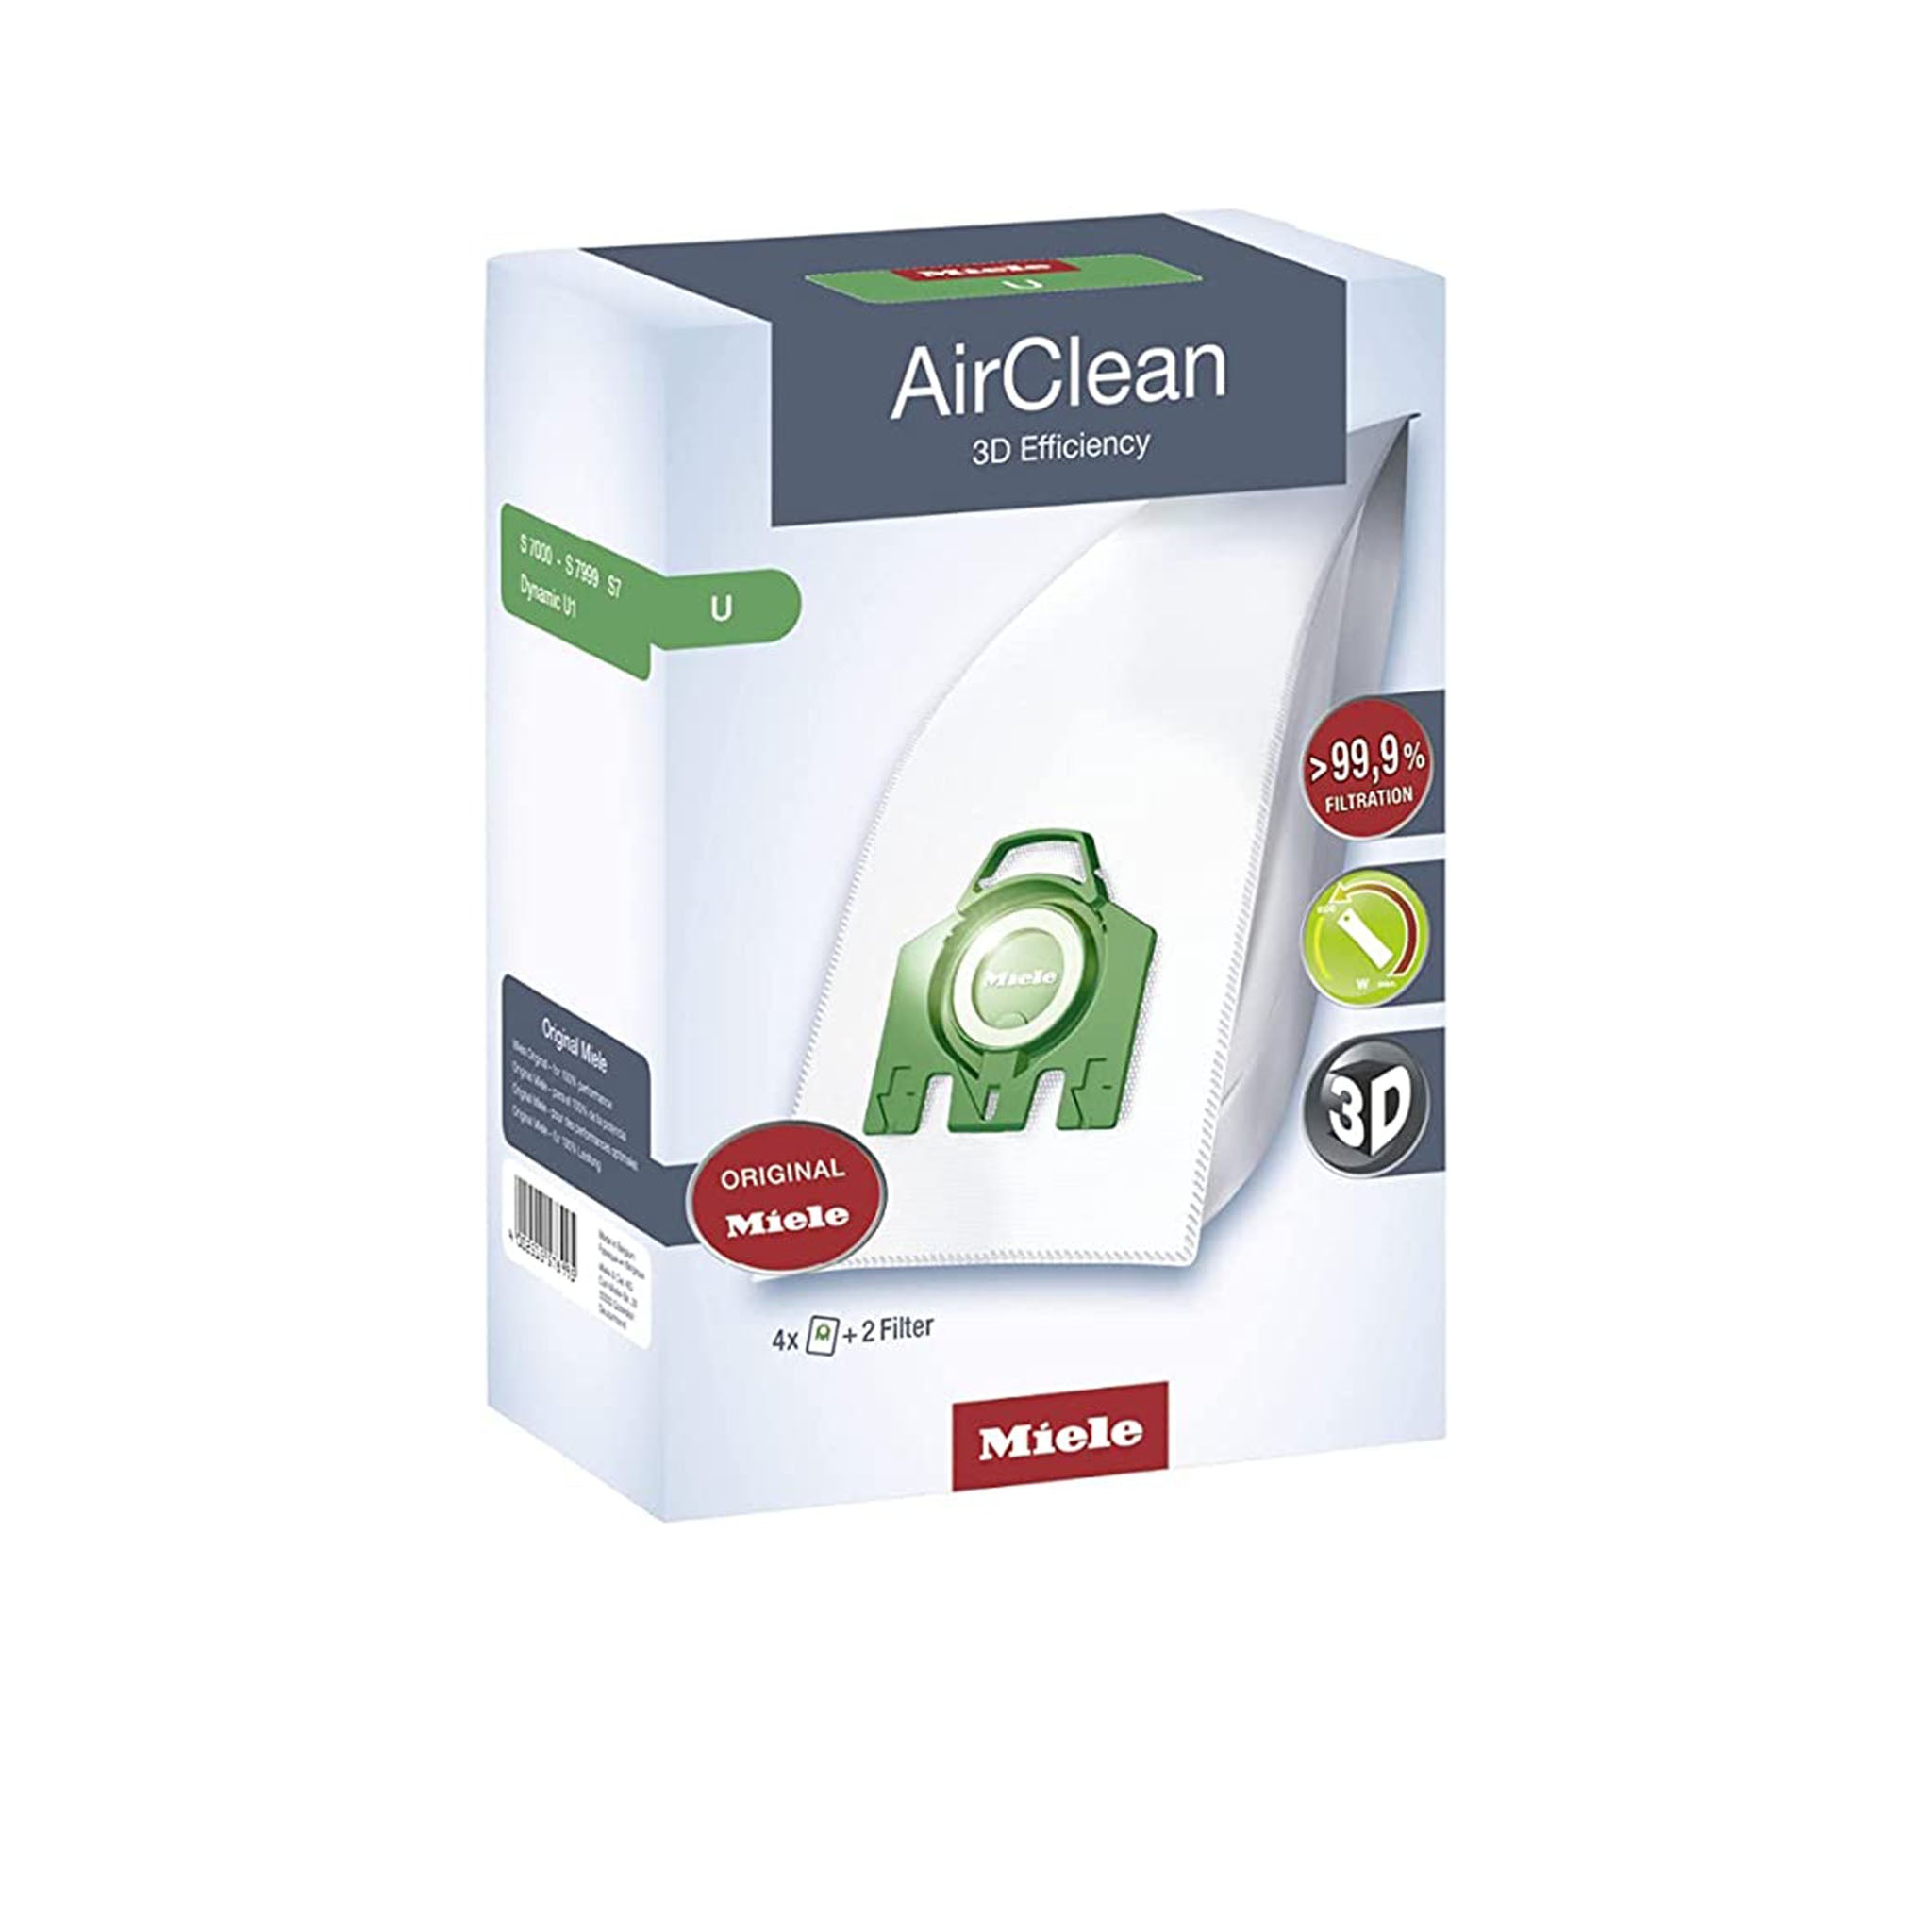 Miele AirClean 3D Efficiency Vacuum FilterBags (Type U)